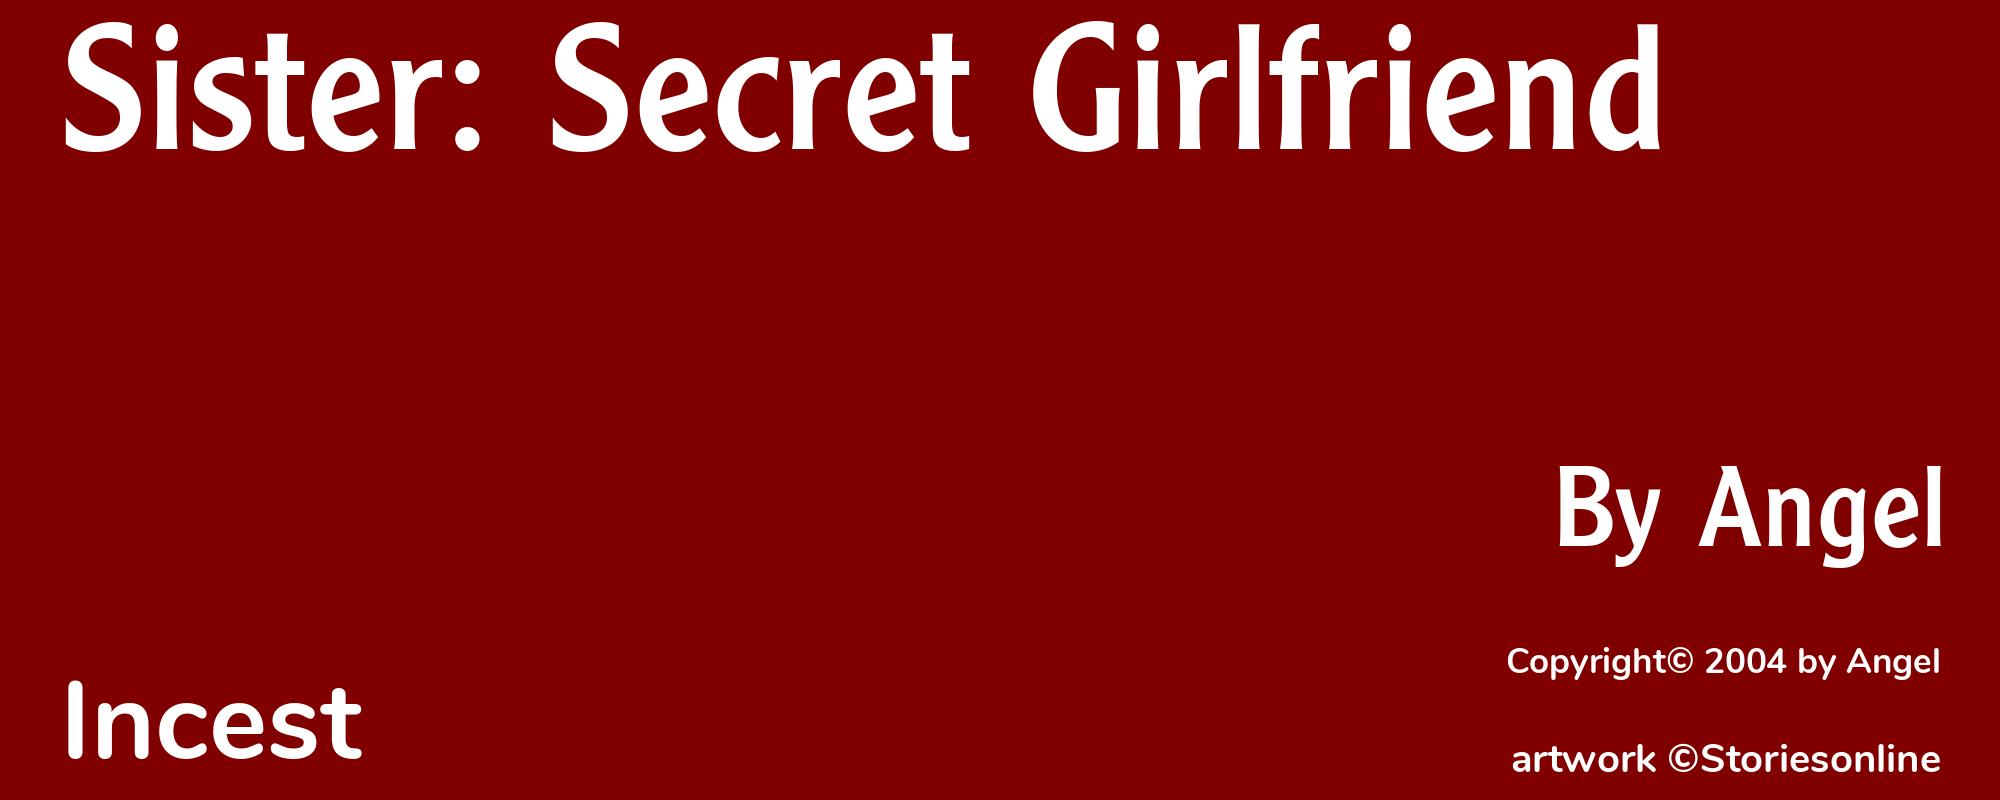 Sister: Secret Girlfriend - Cover